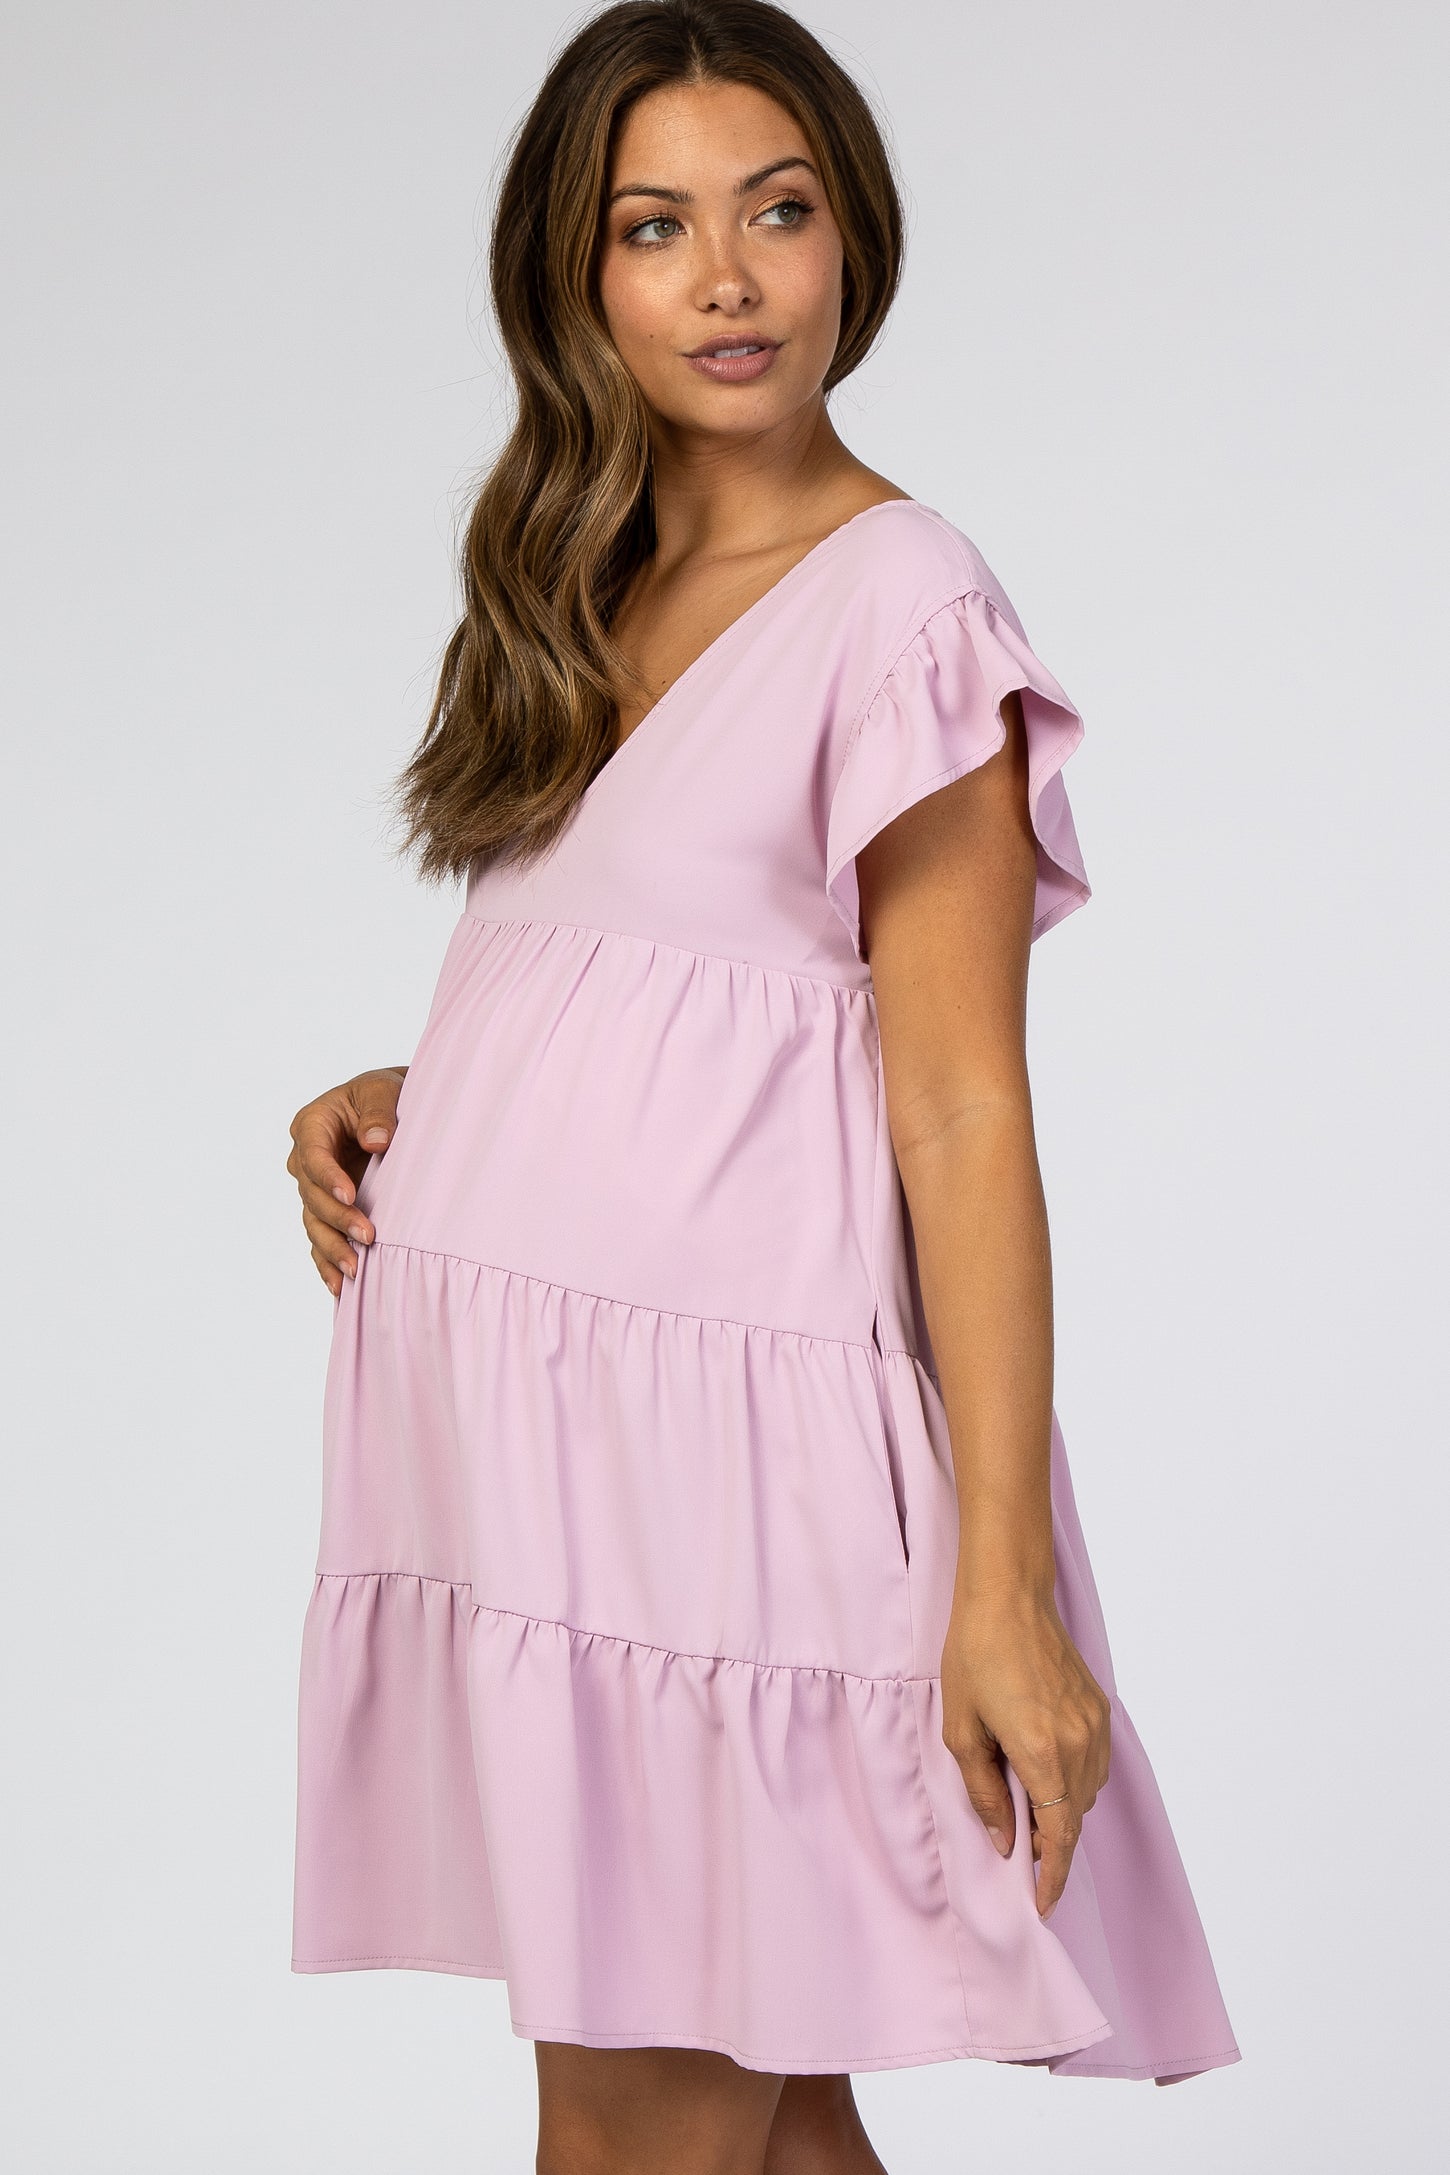 Light Pink Tiered Ruffle Maternity Dress